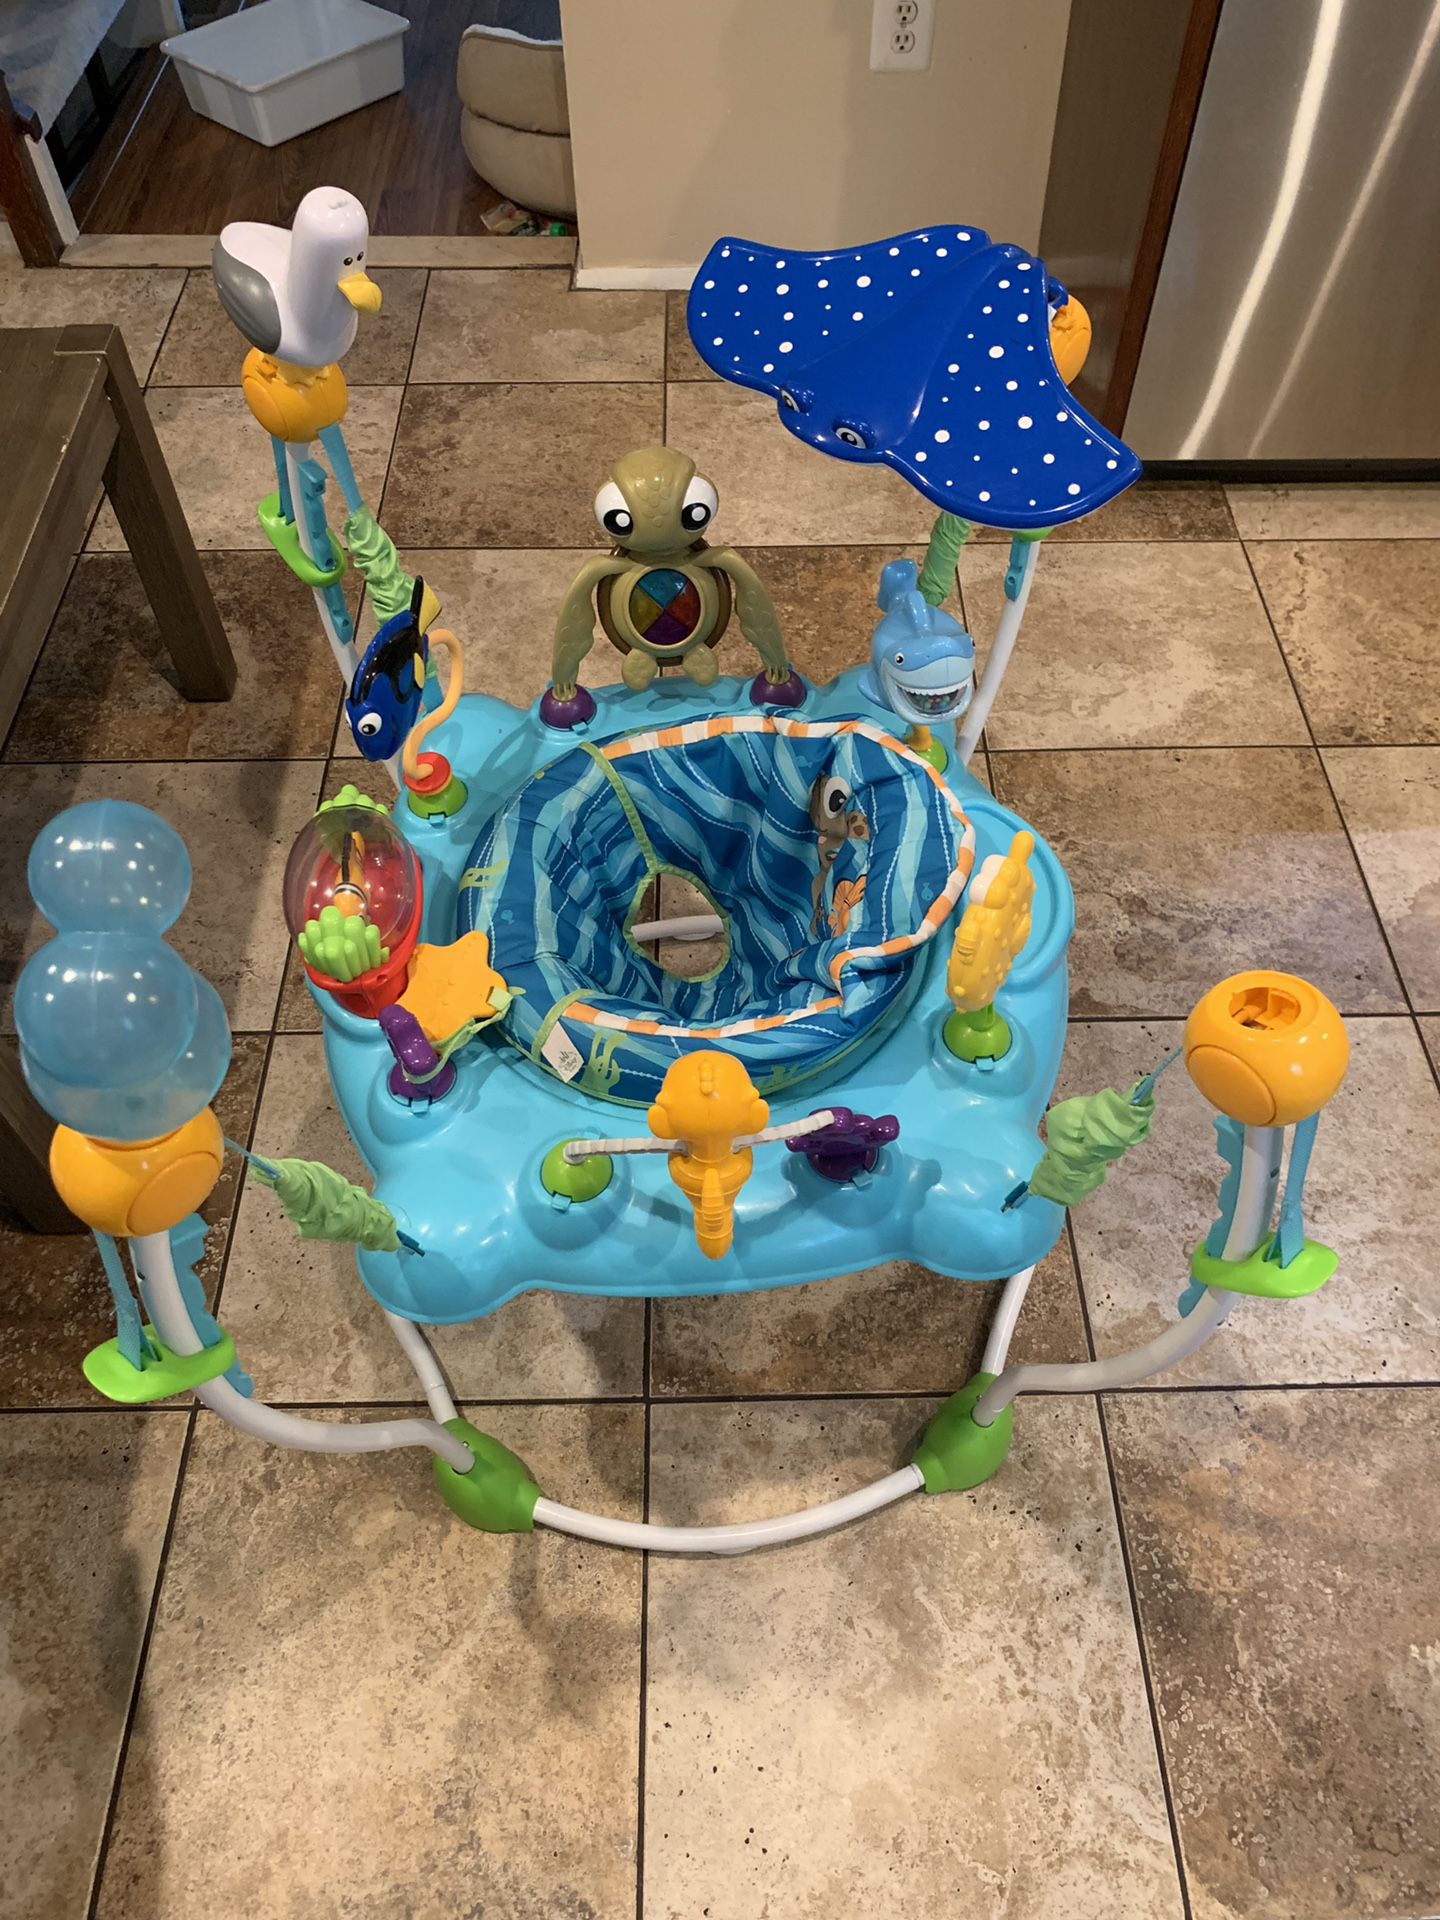 Disney baby finding Nemo sea of activities jumper